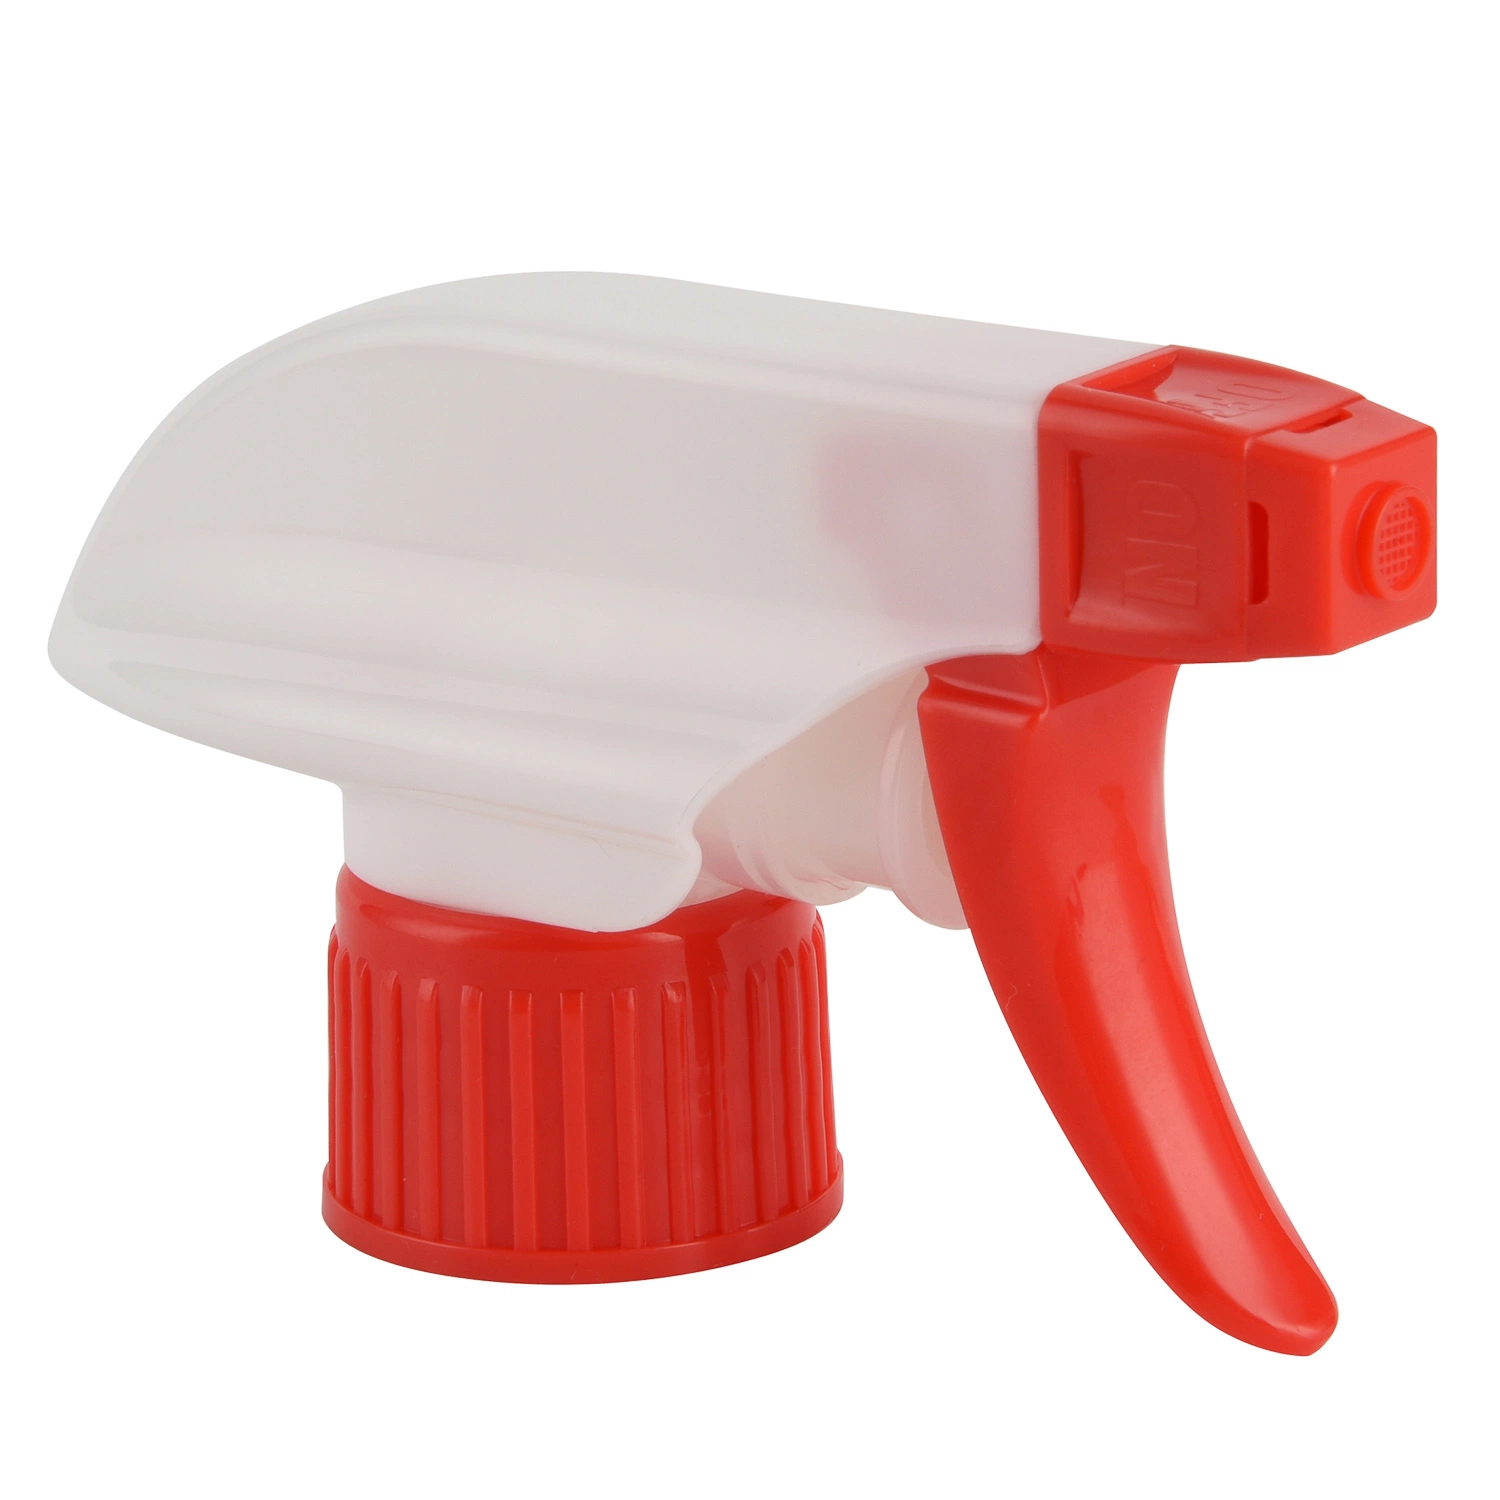 28mm Plastic Trigger Spray for Bottle